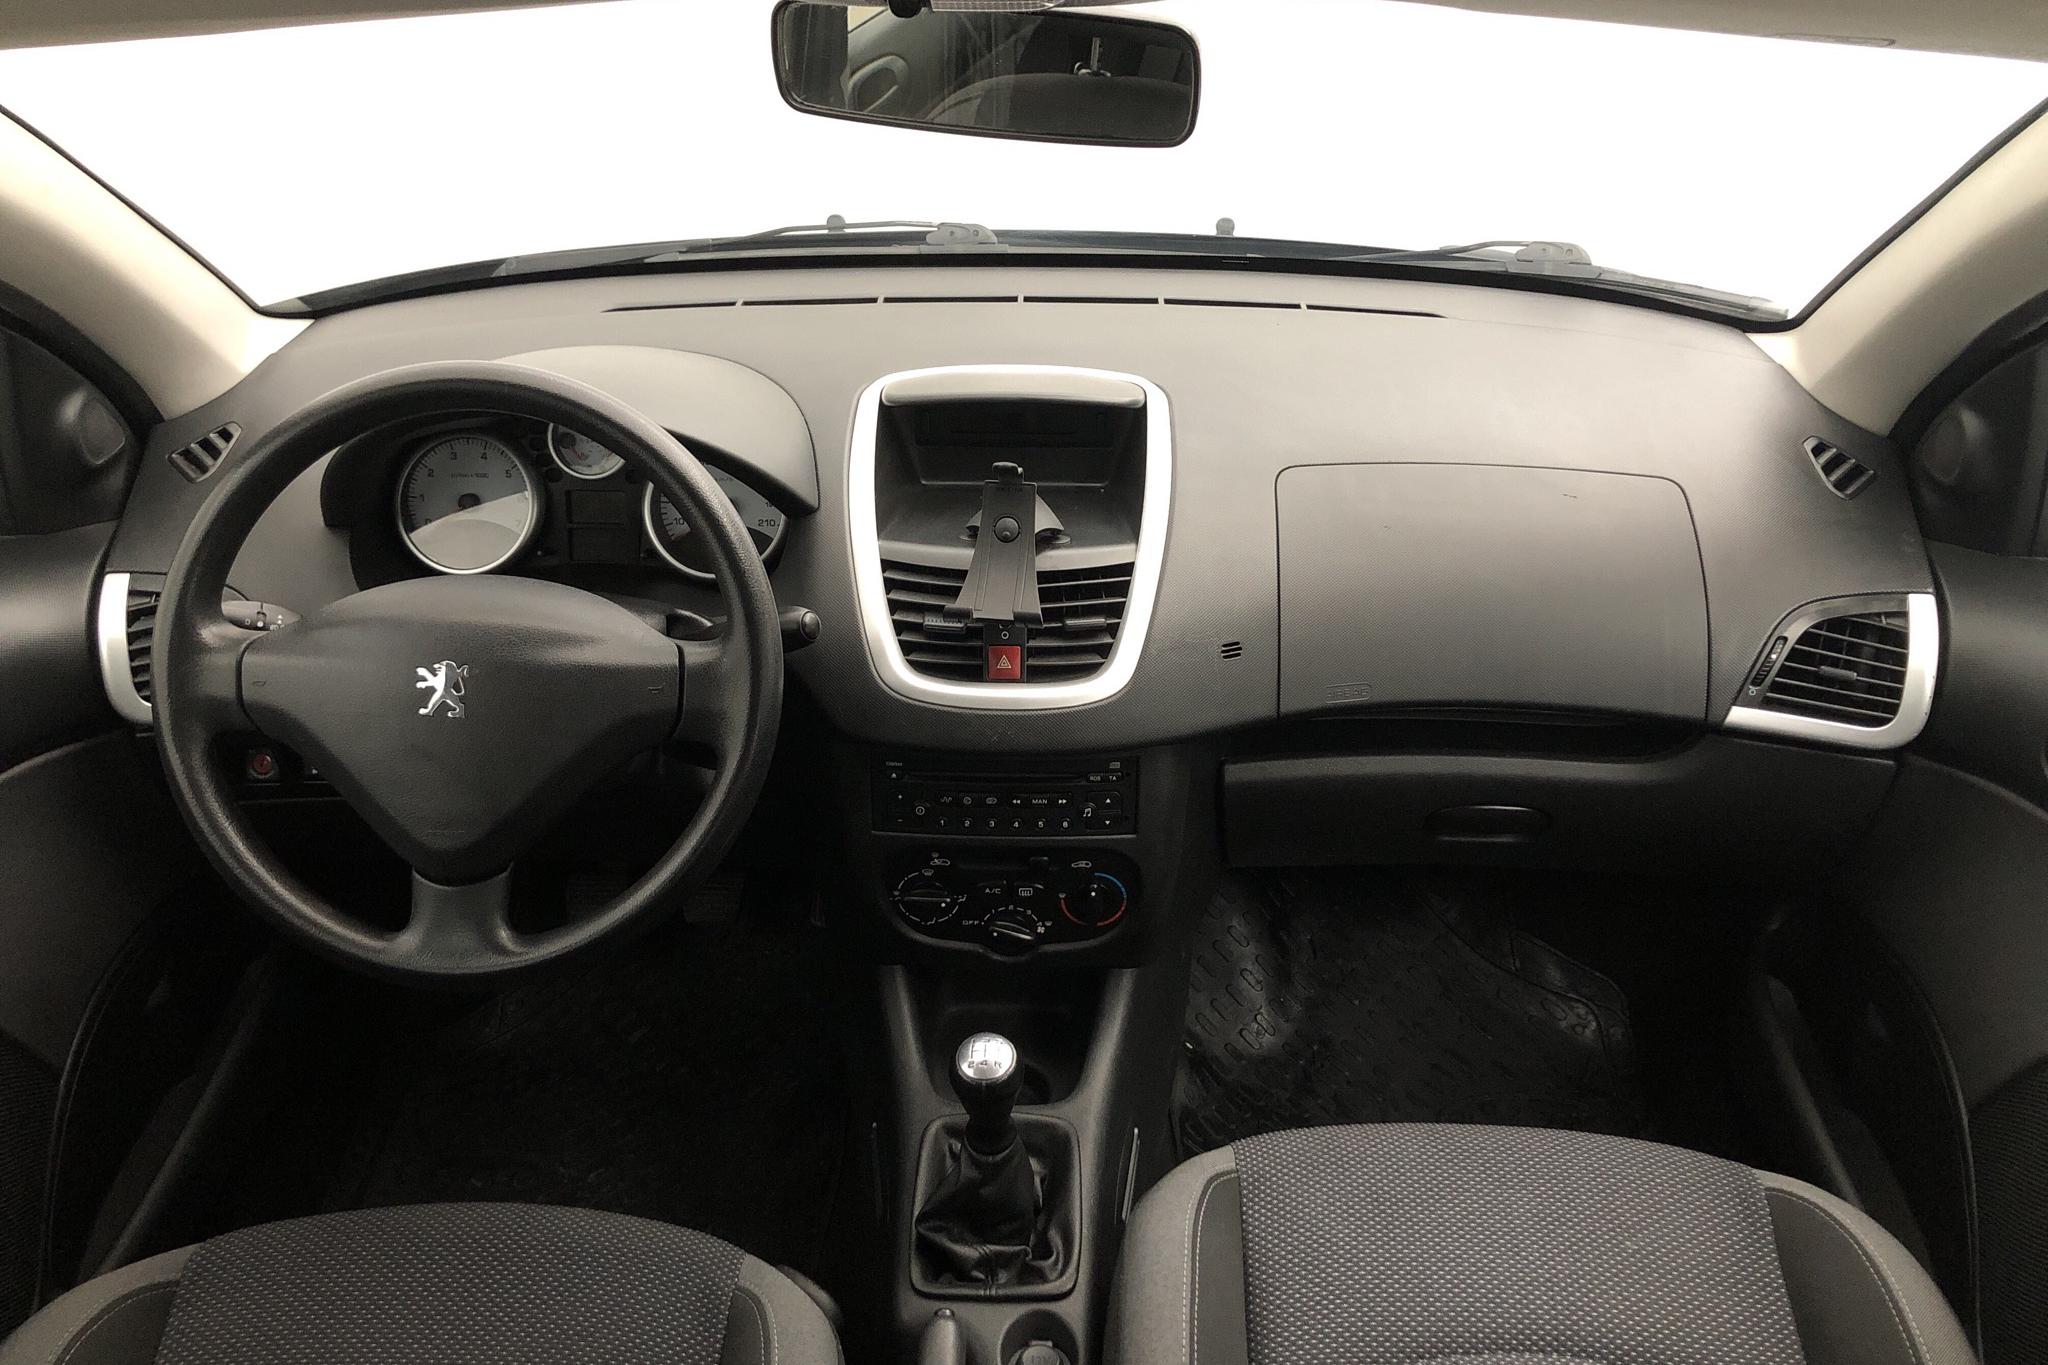 Peugeot 206+ 1.4 5dr (73hk) - 152 360 km - Manual - black - 2010